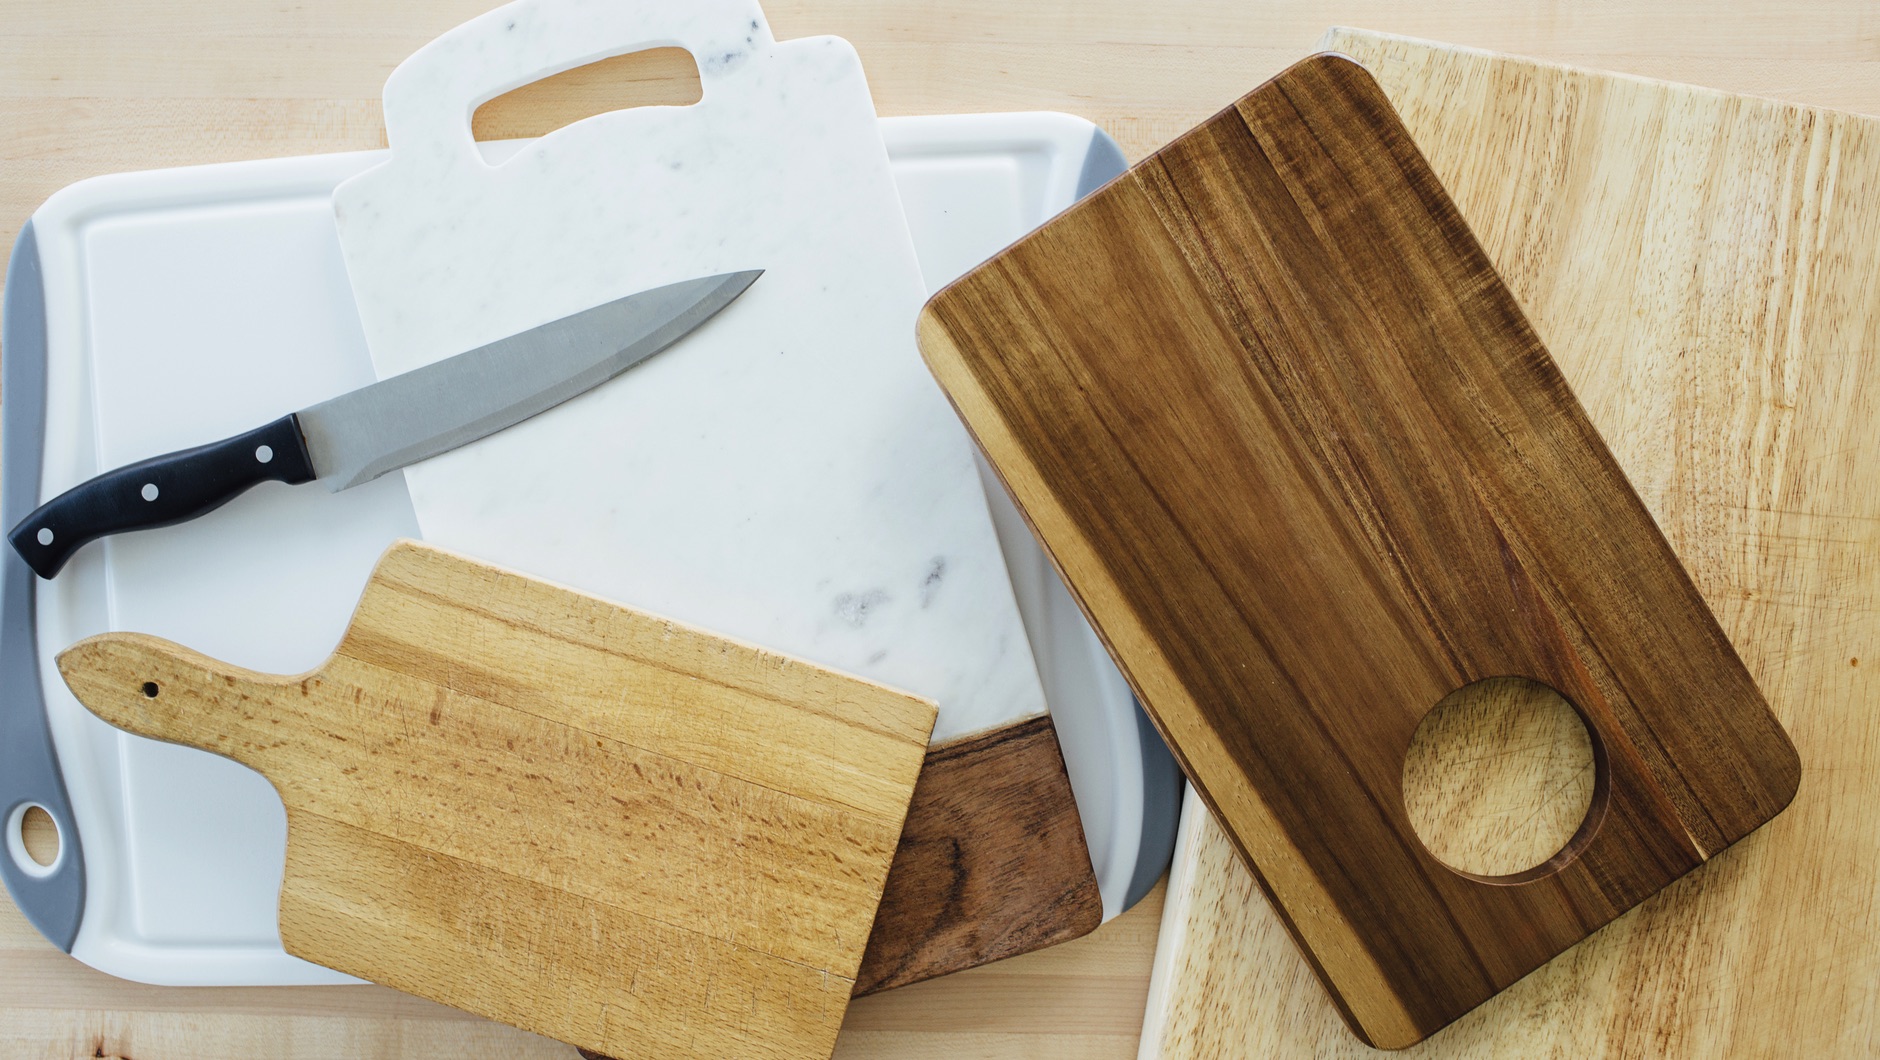 Tablas de cortar de cocina profesional, tabla de cortar de madera